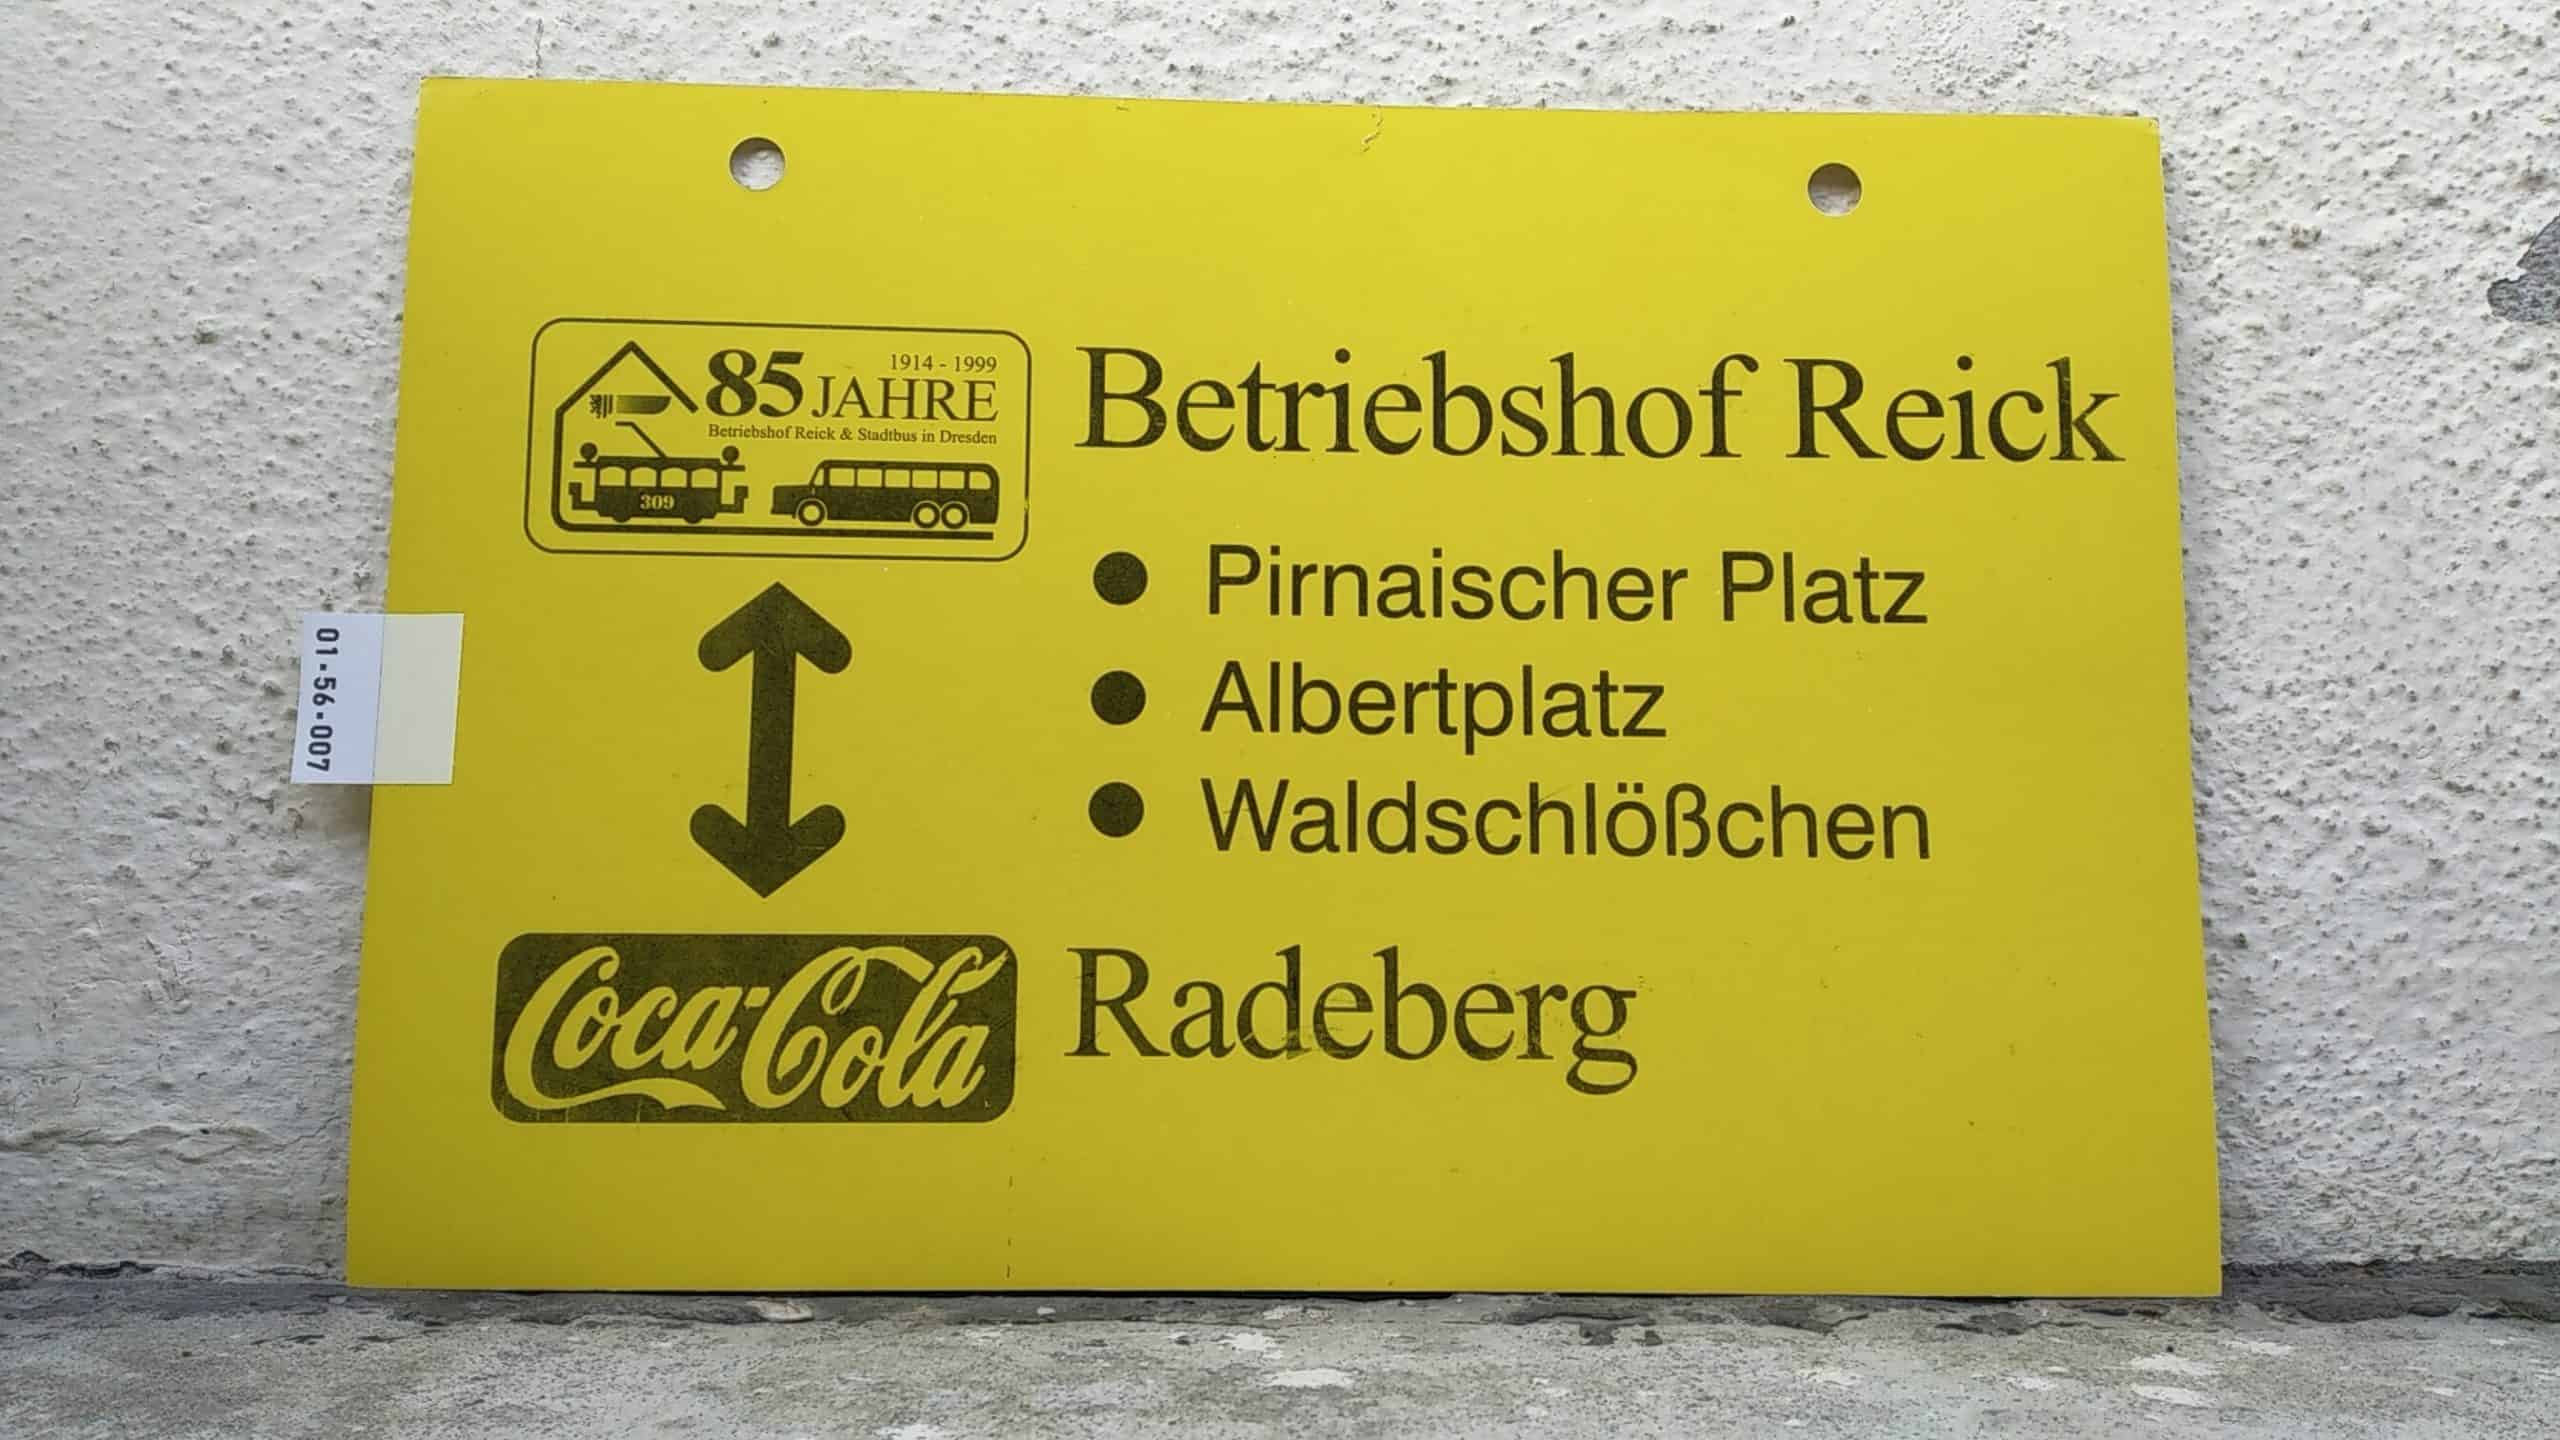 Ein seltenes Straßenbahn-Linienschild aus Dresden, anläßlich [85 JAHRE 1914 - 1999 Betriebshof Reick & Stadtbus in Dresden] Betriebshof Reick - [Coca-Cola] Radeberg